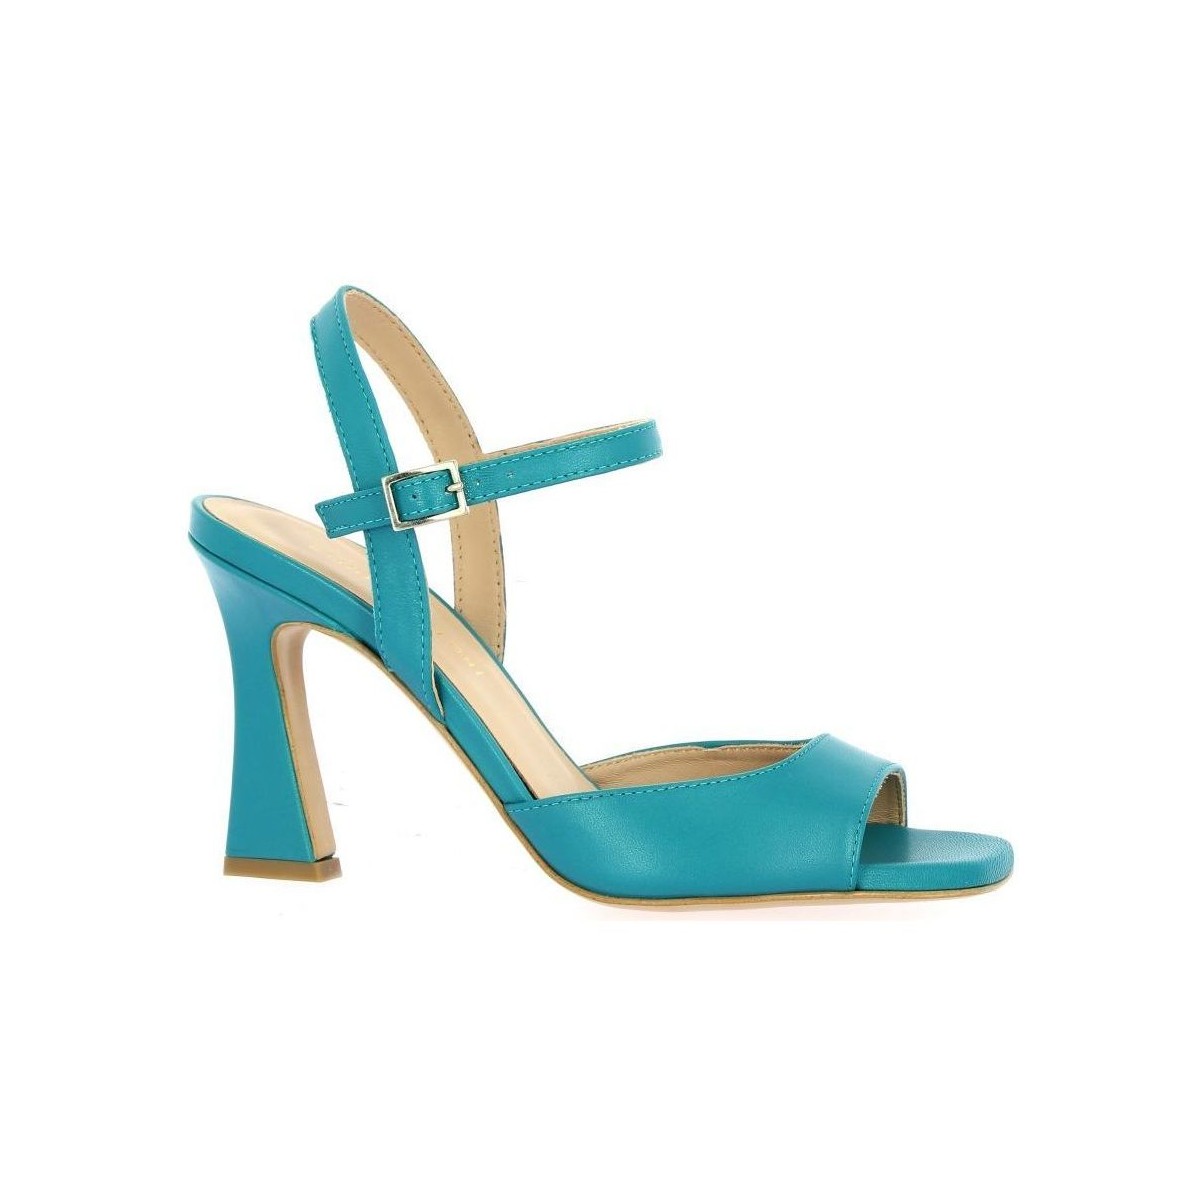 Chaussures Femme Sandales et Nu-pieds Fremilu Nu pieds cuir  turquoise Bleu